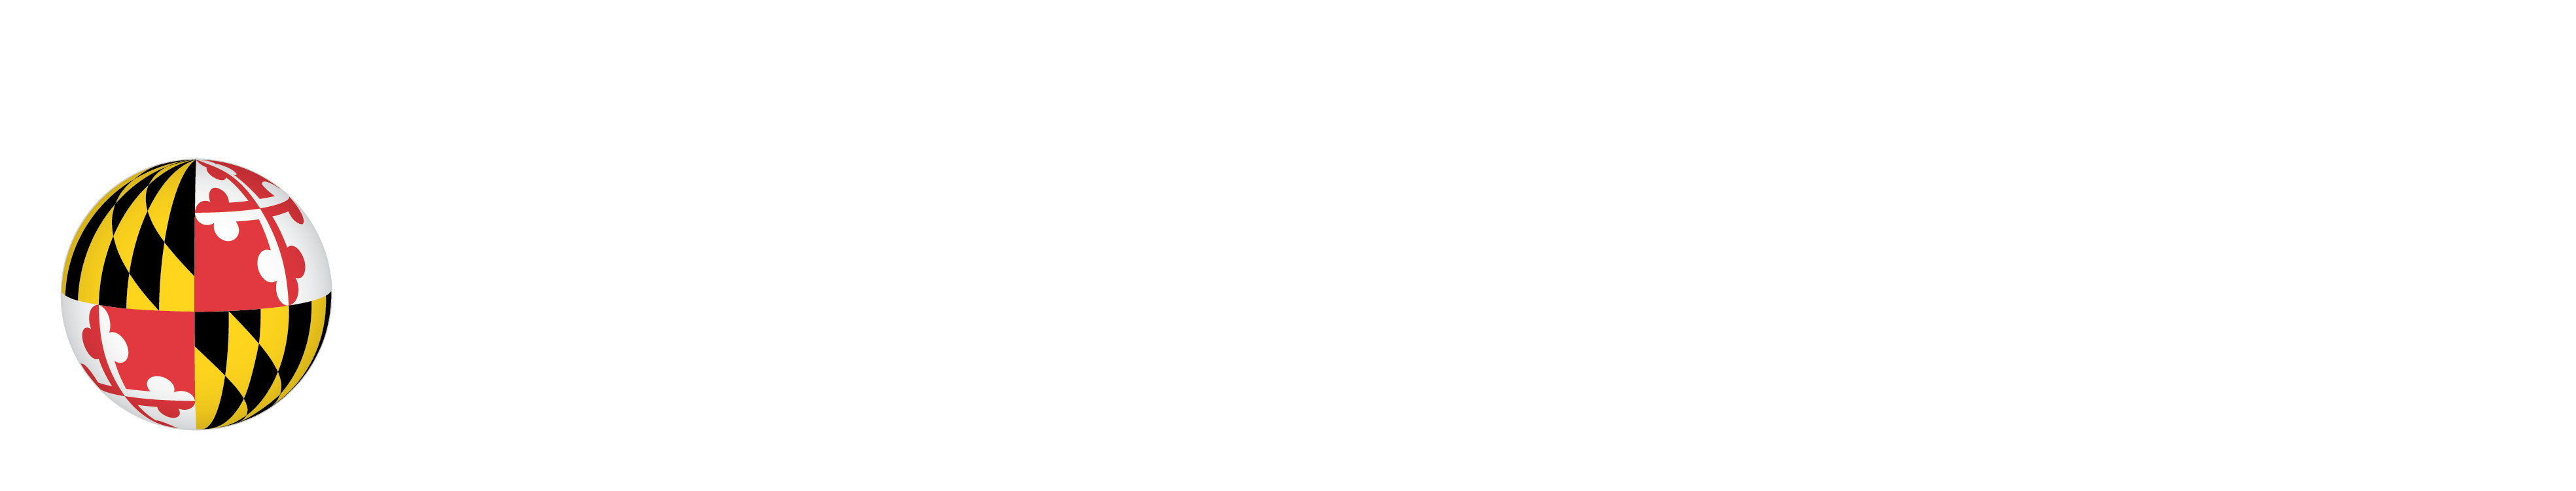 Roshan Institute For Persian Studies Wordmark and UMD Logo